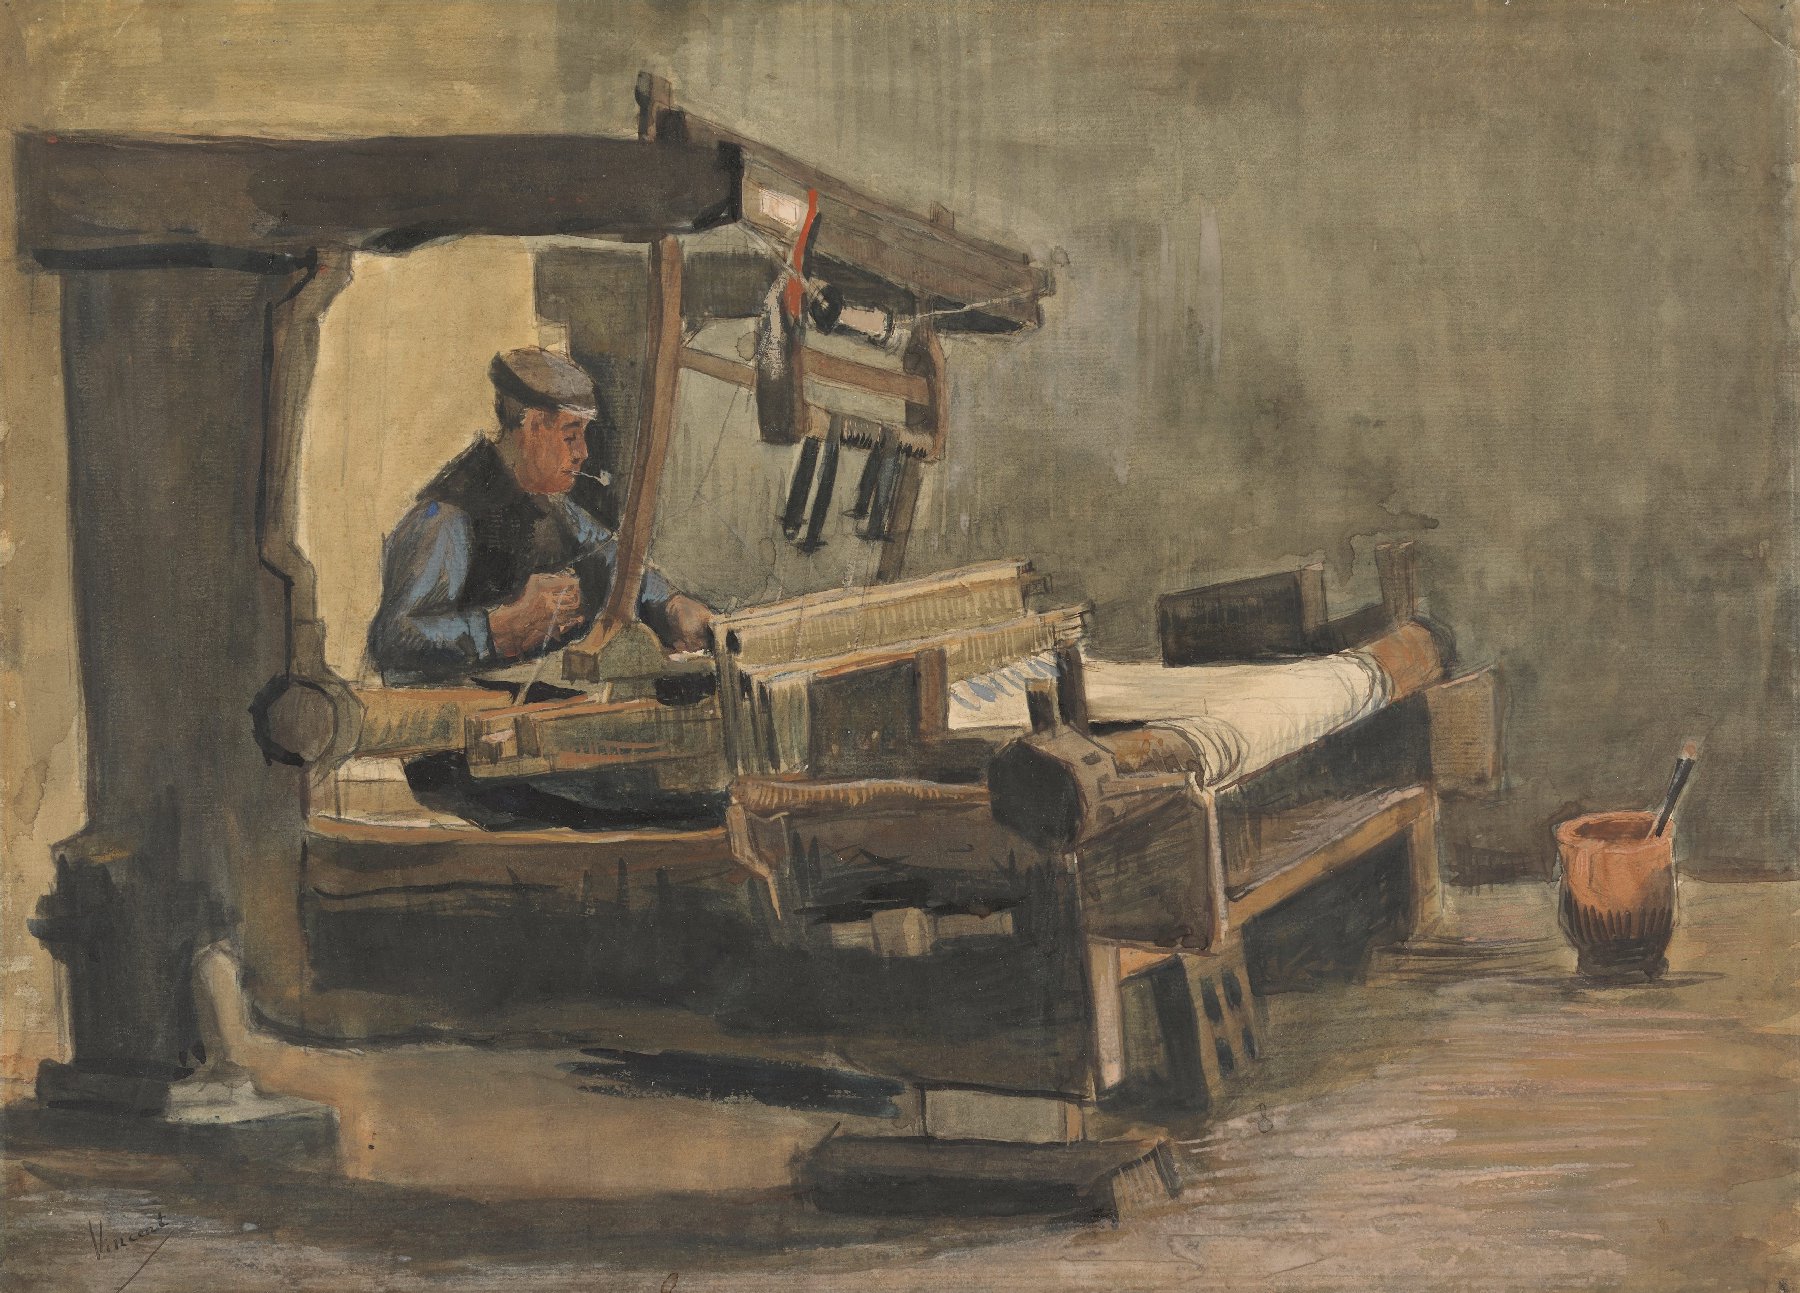 Wever Vincent van Gogh (1853 - 1890), Nuenen, januari-augustus 1884